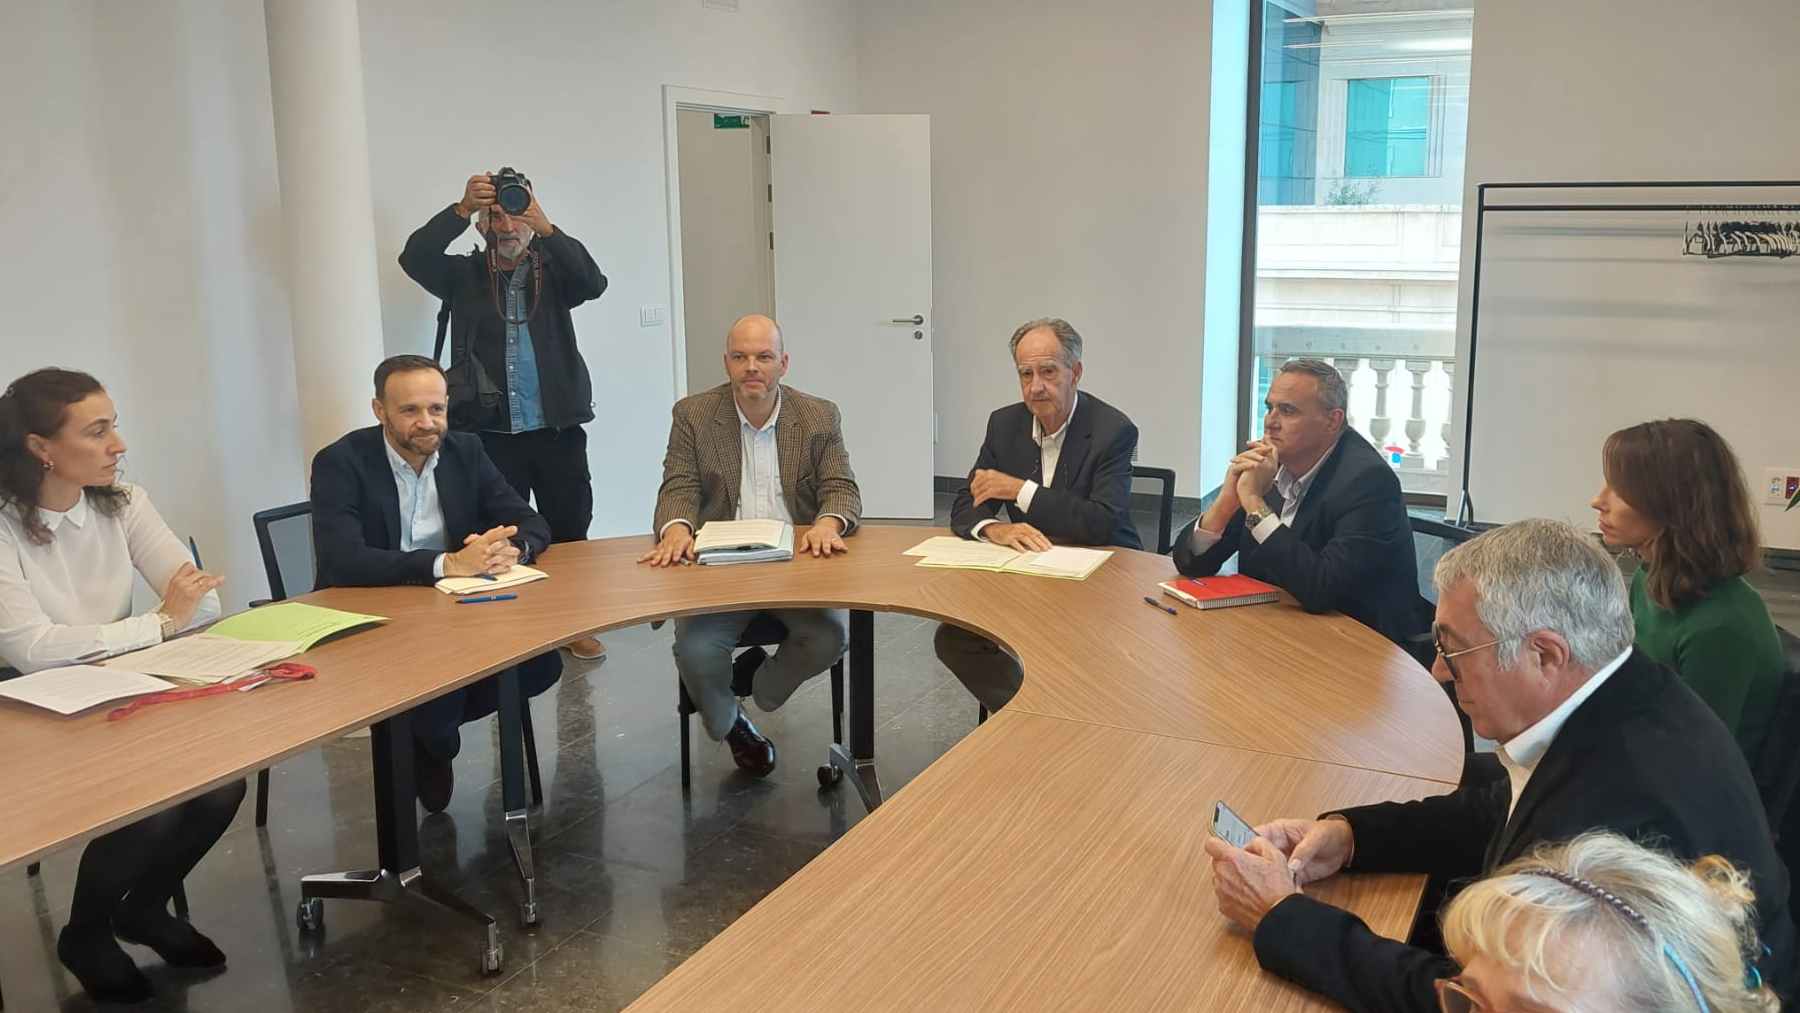 Reunión de Autoridad Portuaria y Ayuntamiento de Palma con vecinos y empresarios del Paseo Marítimo.